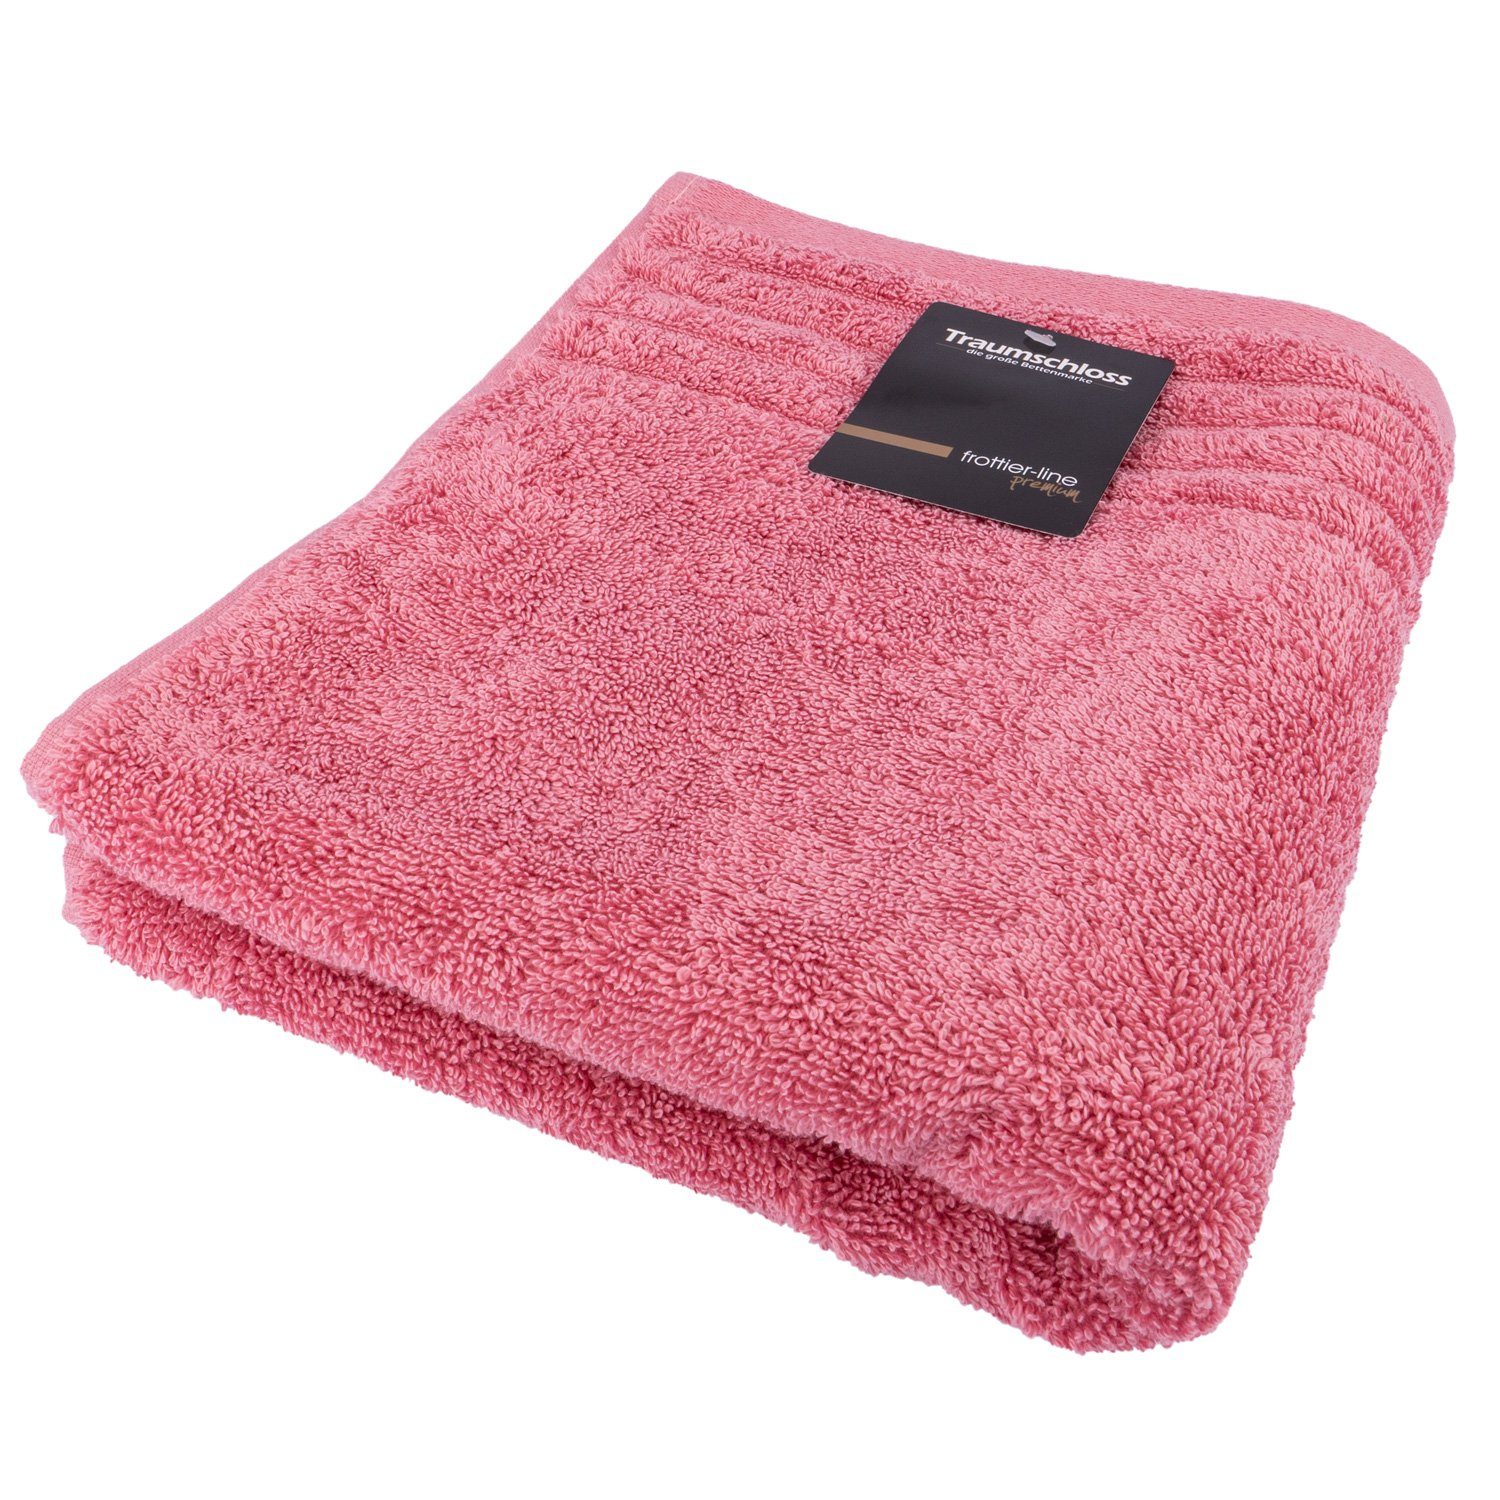 Premium-Line, mit pink Baumwolle amerikanische 600g/m² Traumschloss Duschtuch (1-St), Frottier Supima 100%